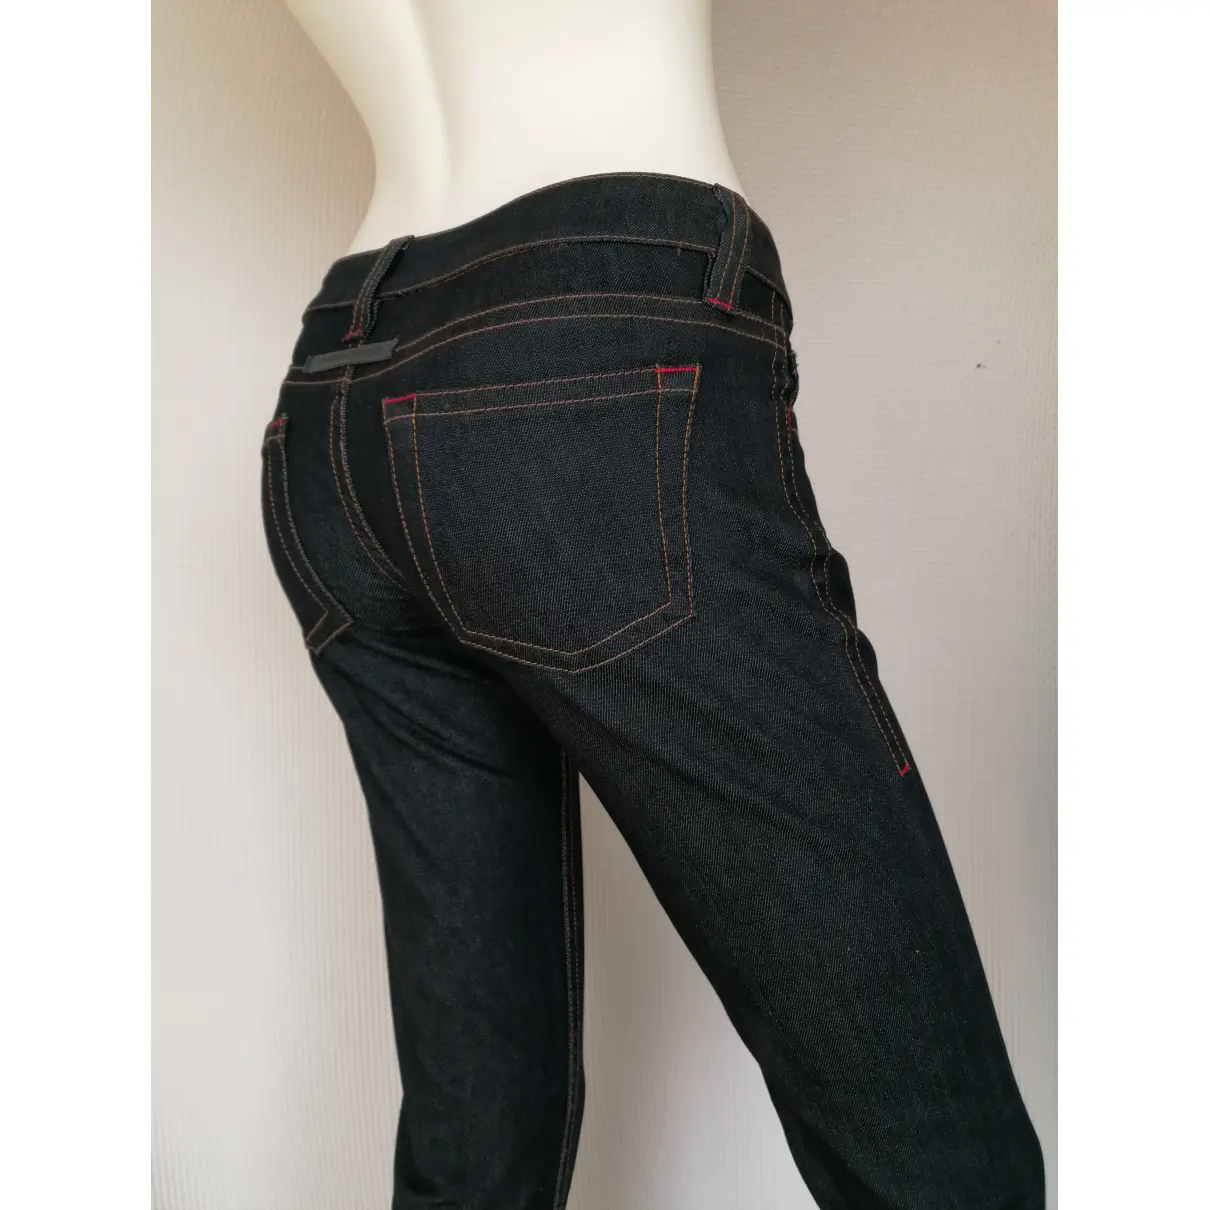 Buy Jean Paul Gaultier Slim jeans online